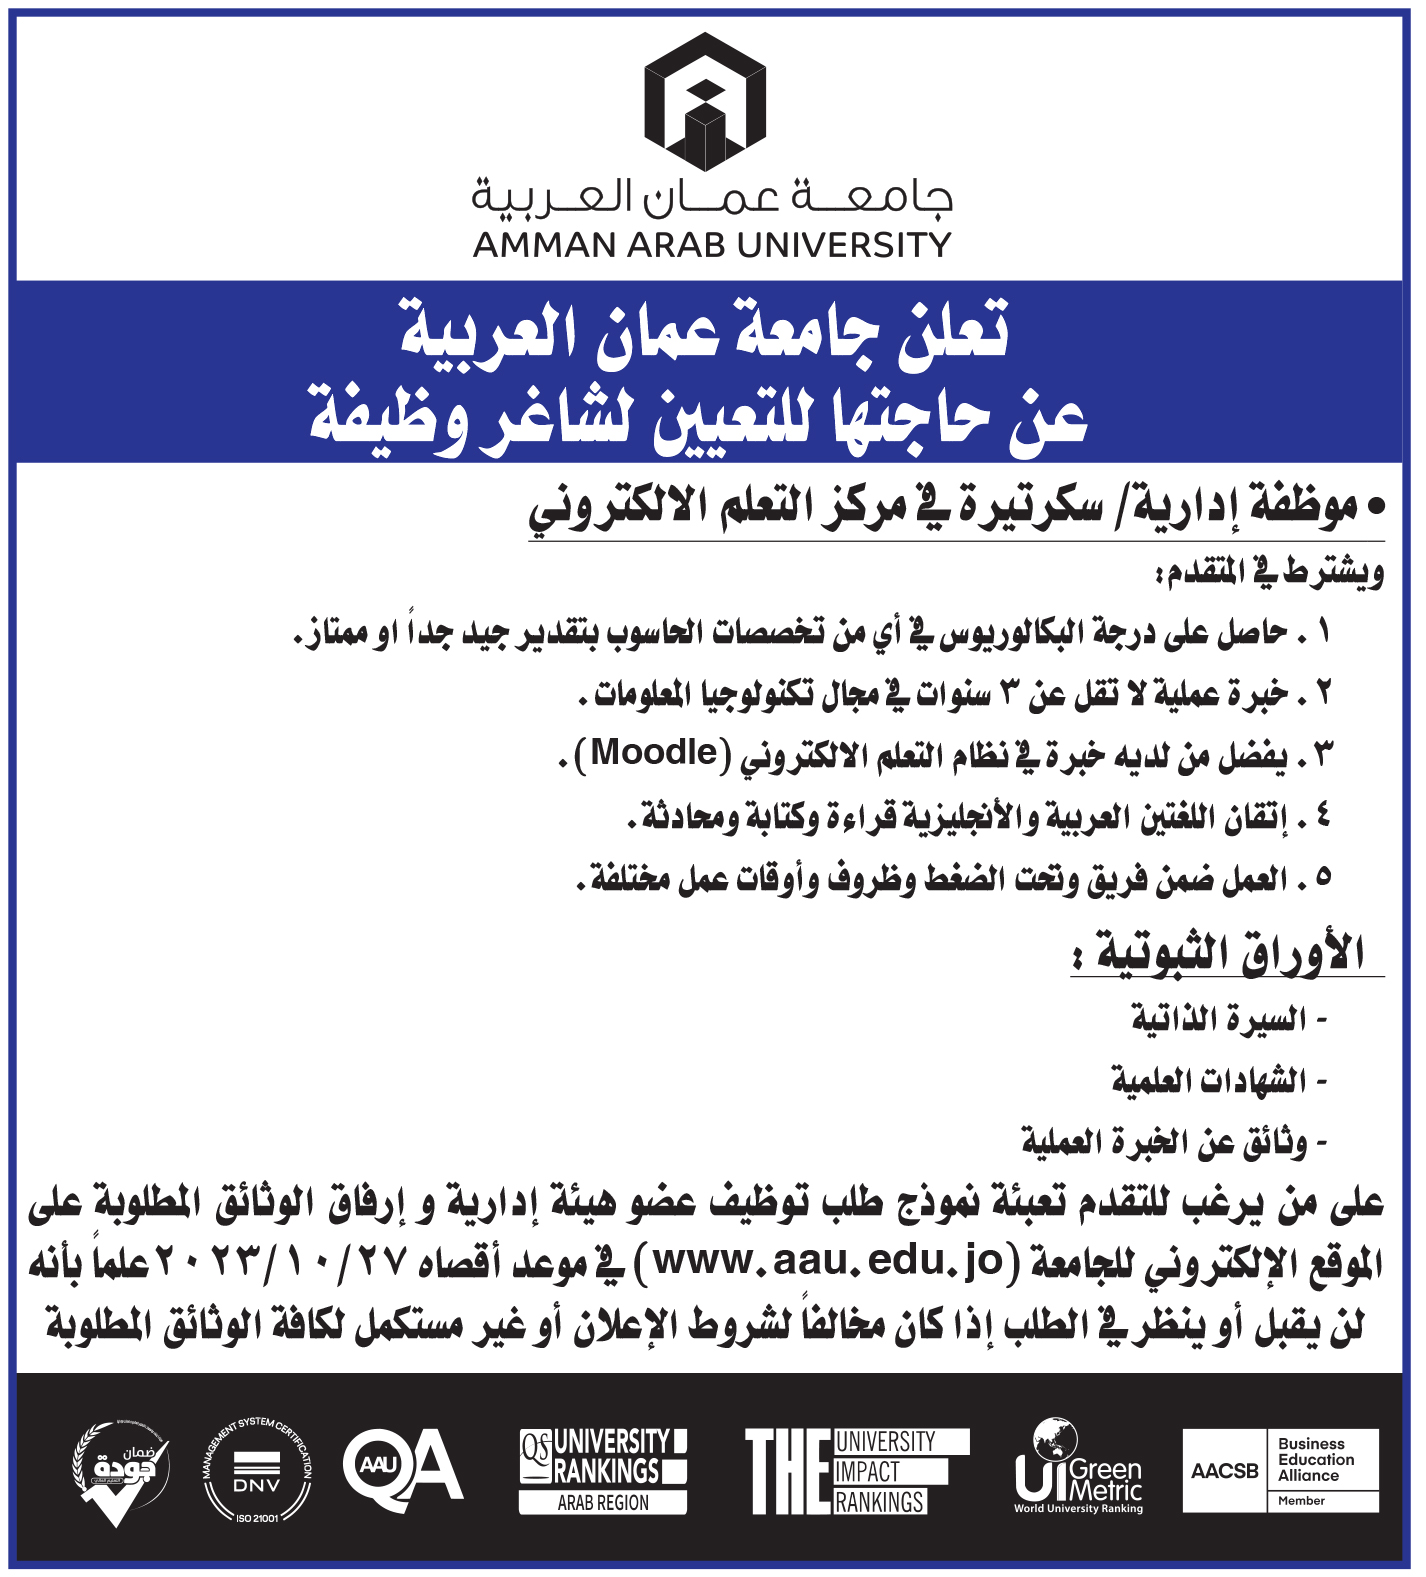 تعلن جامعة عمان العربية عن حاجتها لتعيين شاغر لوظيفة موظفة ادارية / سكرتيرة في مركز التعلم الالكتروني